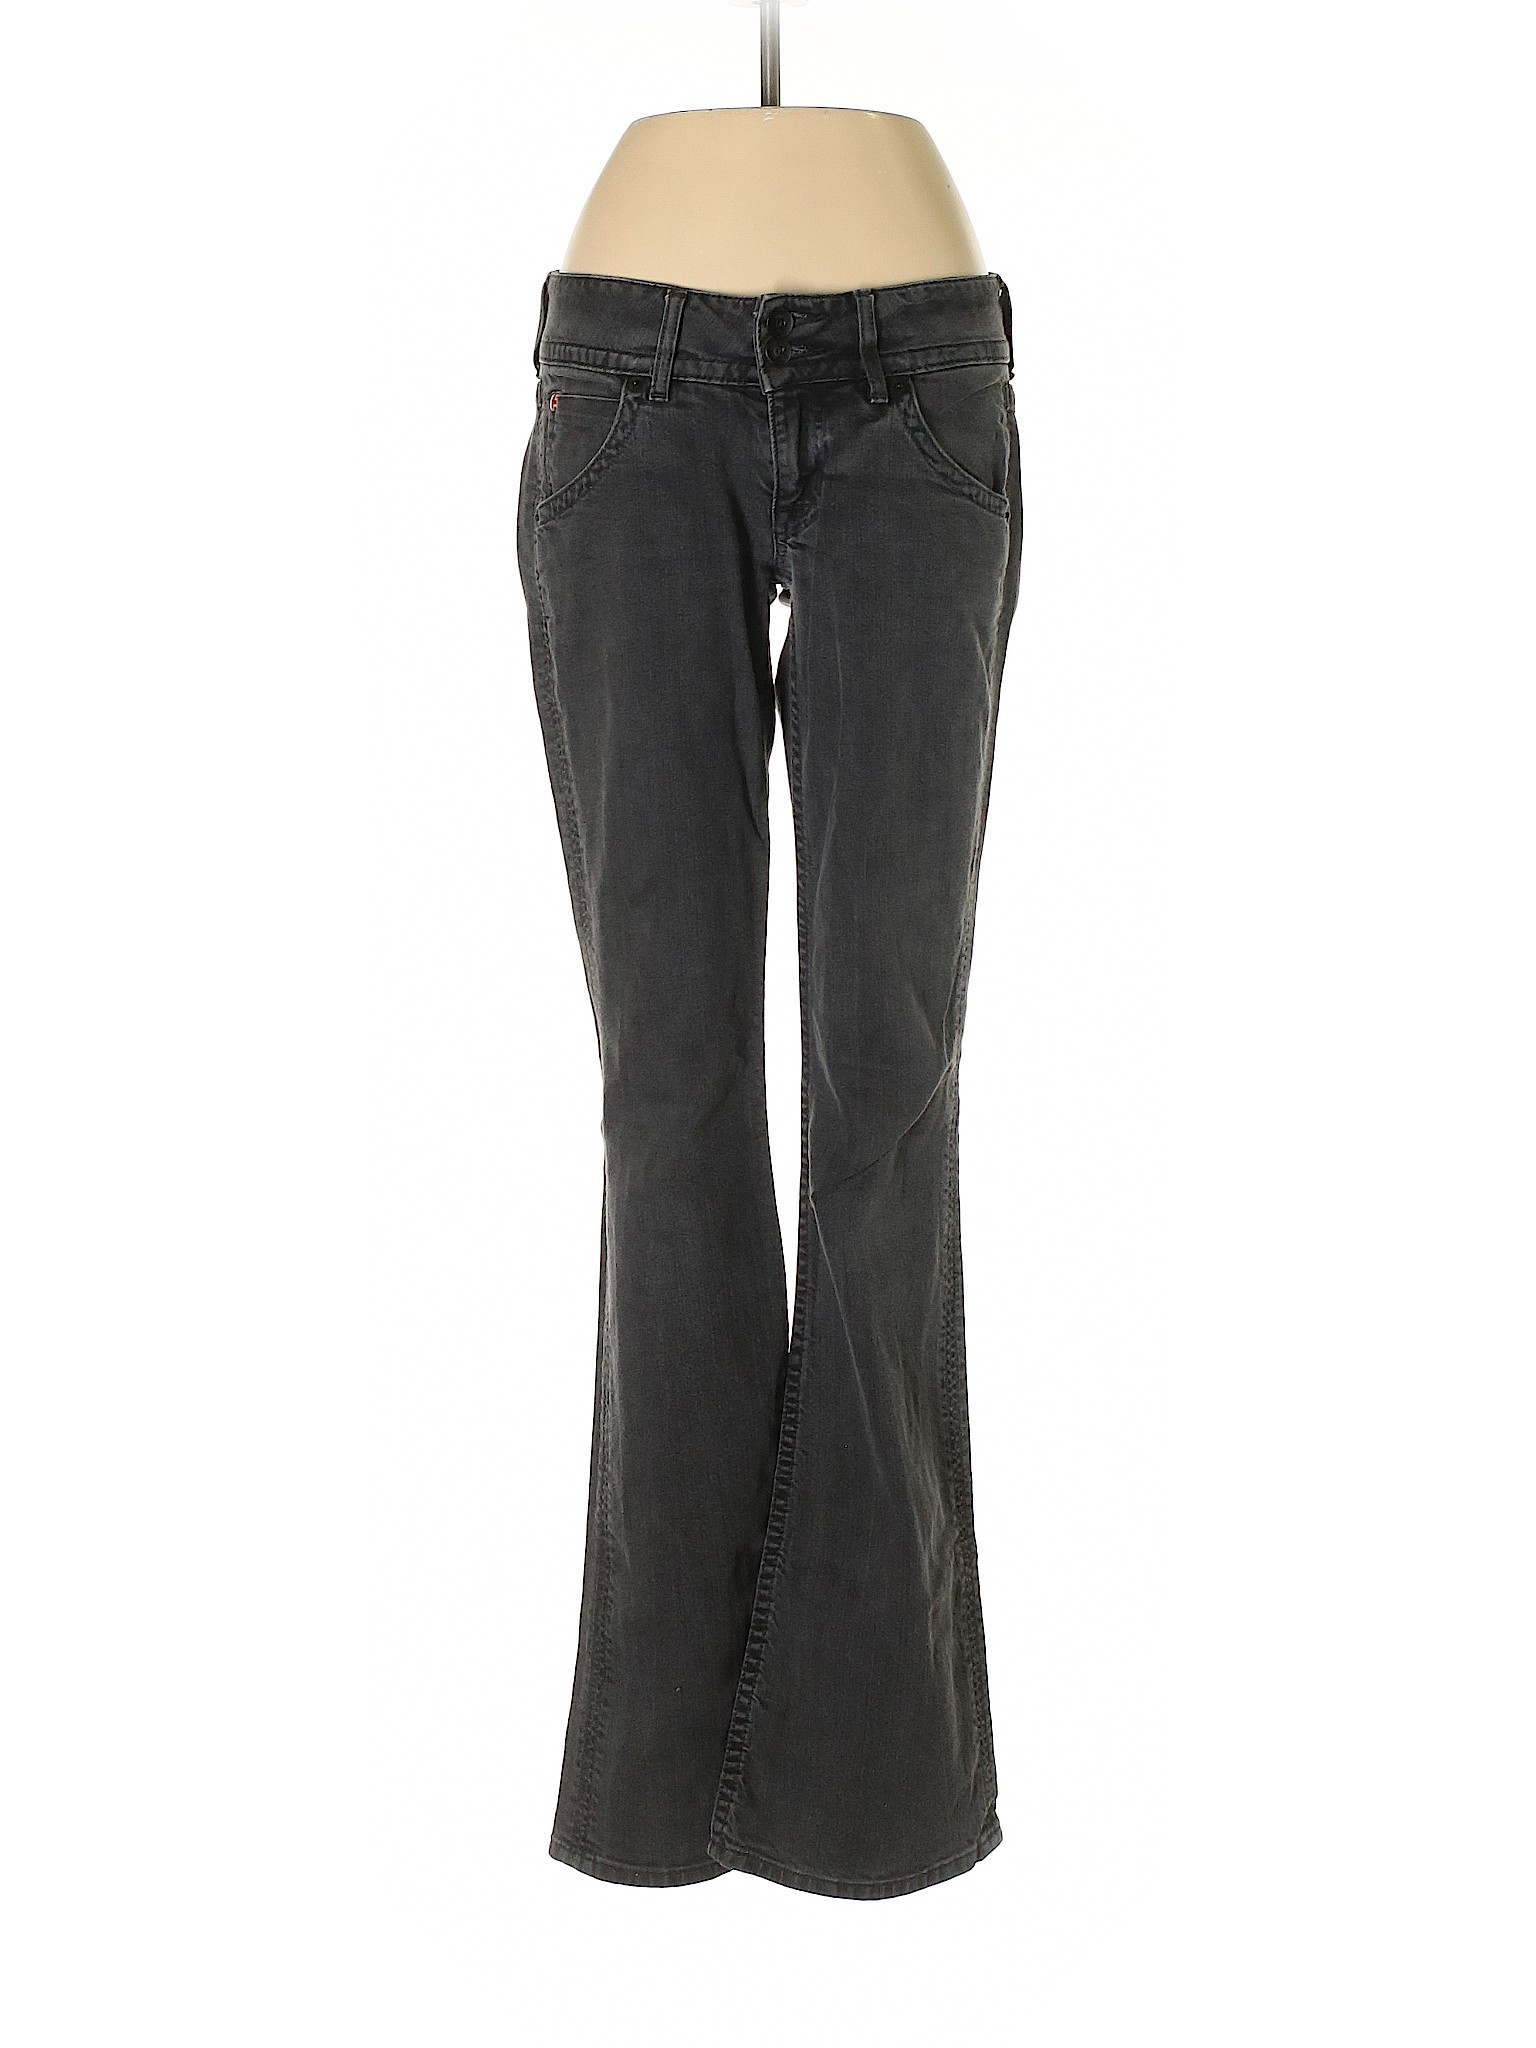 Hudson Jeans Women Black Jeans 25W | eBay